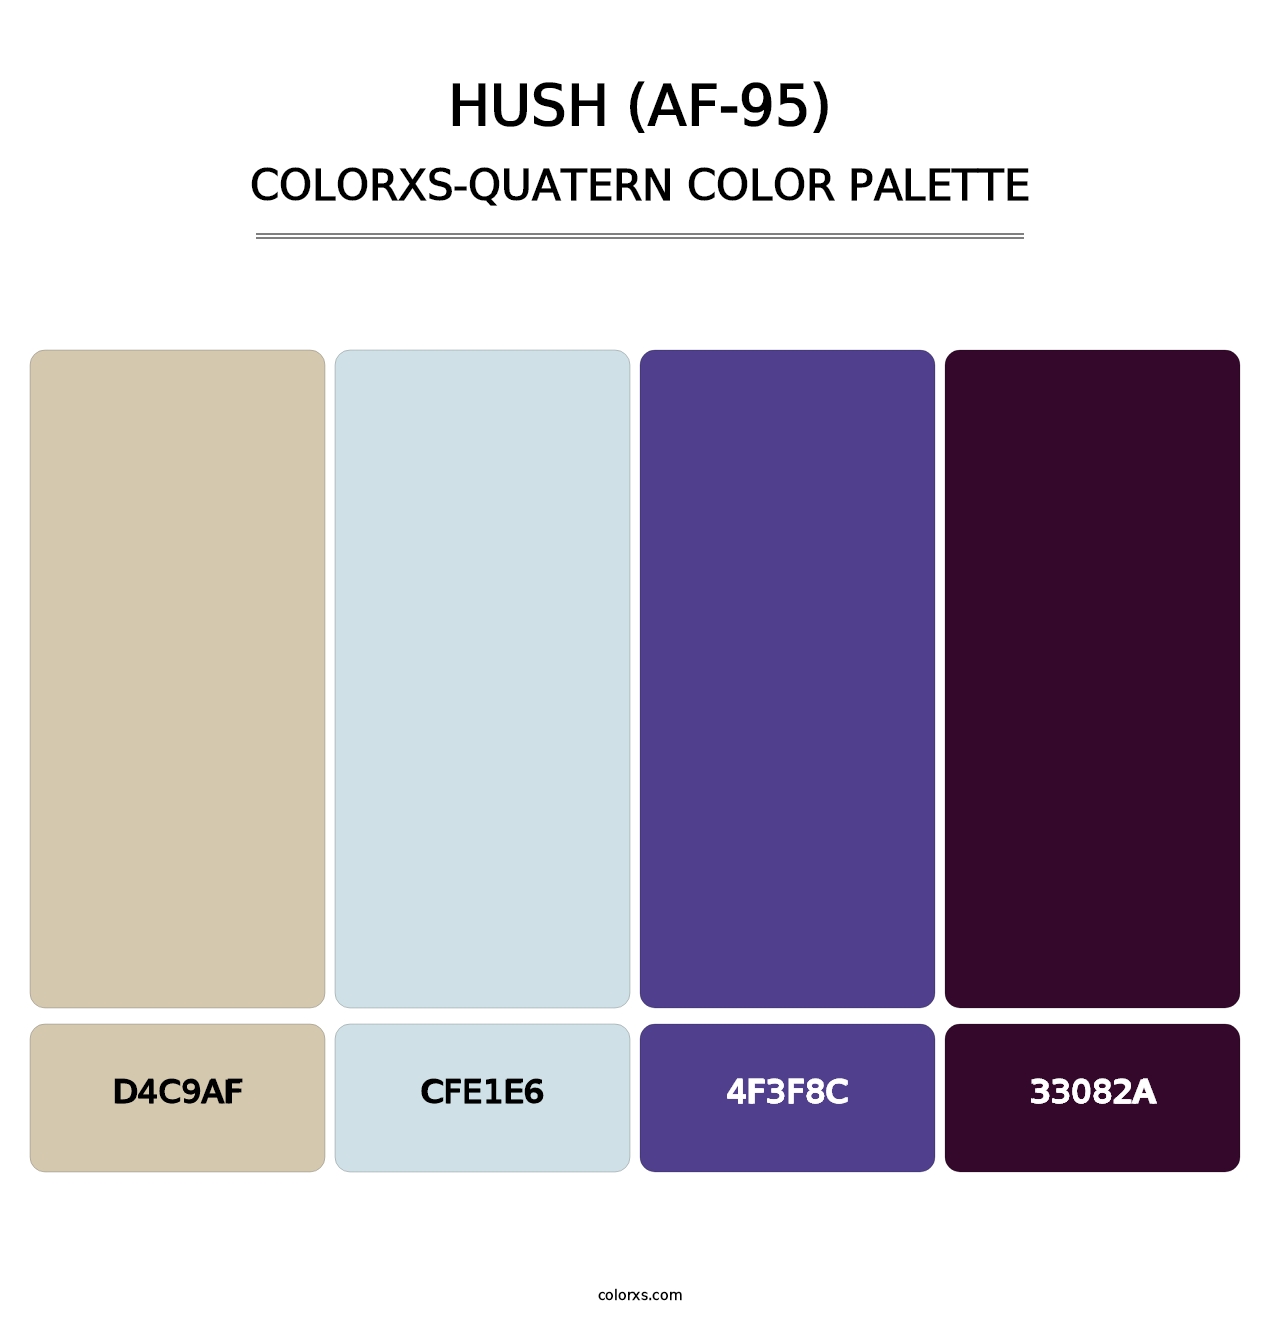 Hush (AF-95) - Colorxs Quatern Palette